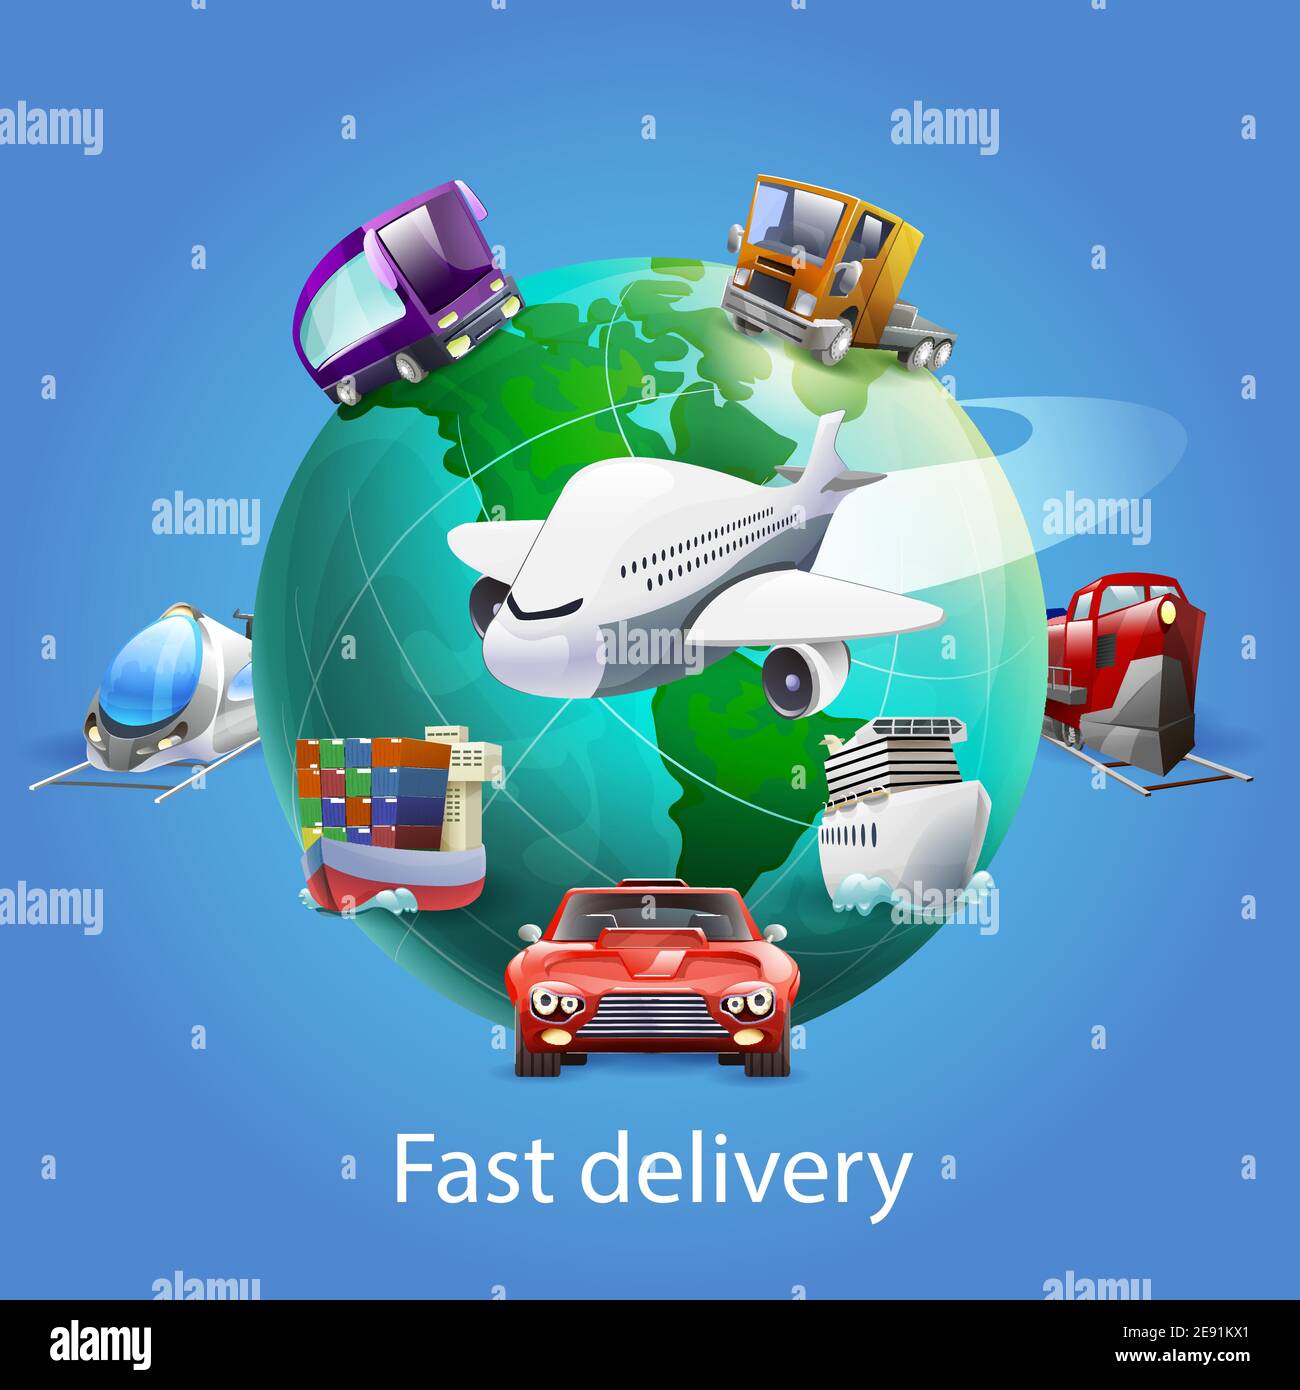 Schnelle Lieferung Cartoon-Konzept mit Globus Flugzeug Auto und Schiff Vektorgrafik auf blauem Hintergrund Stock Vektor